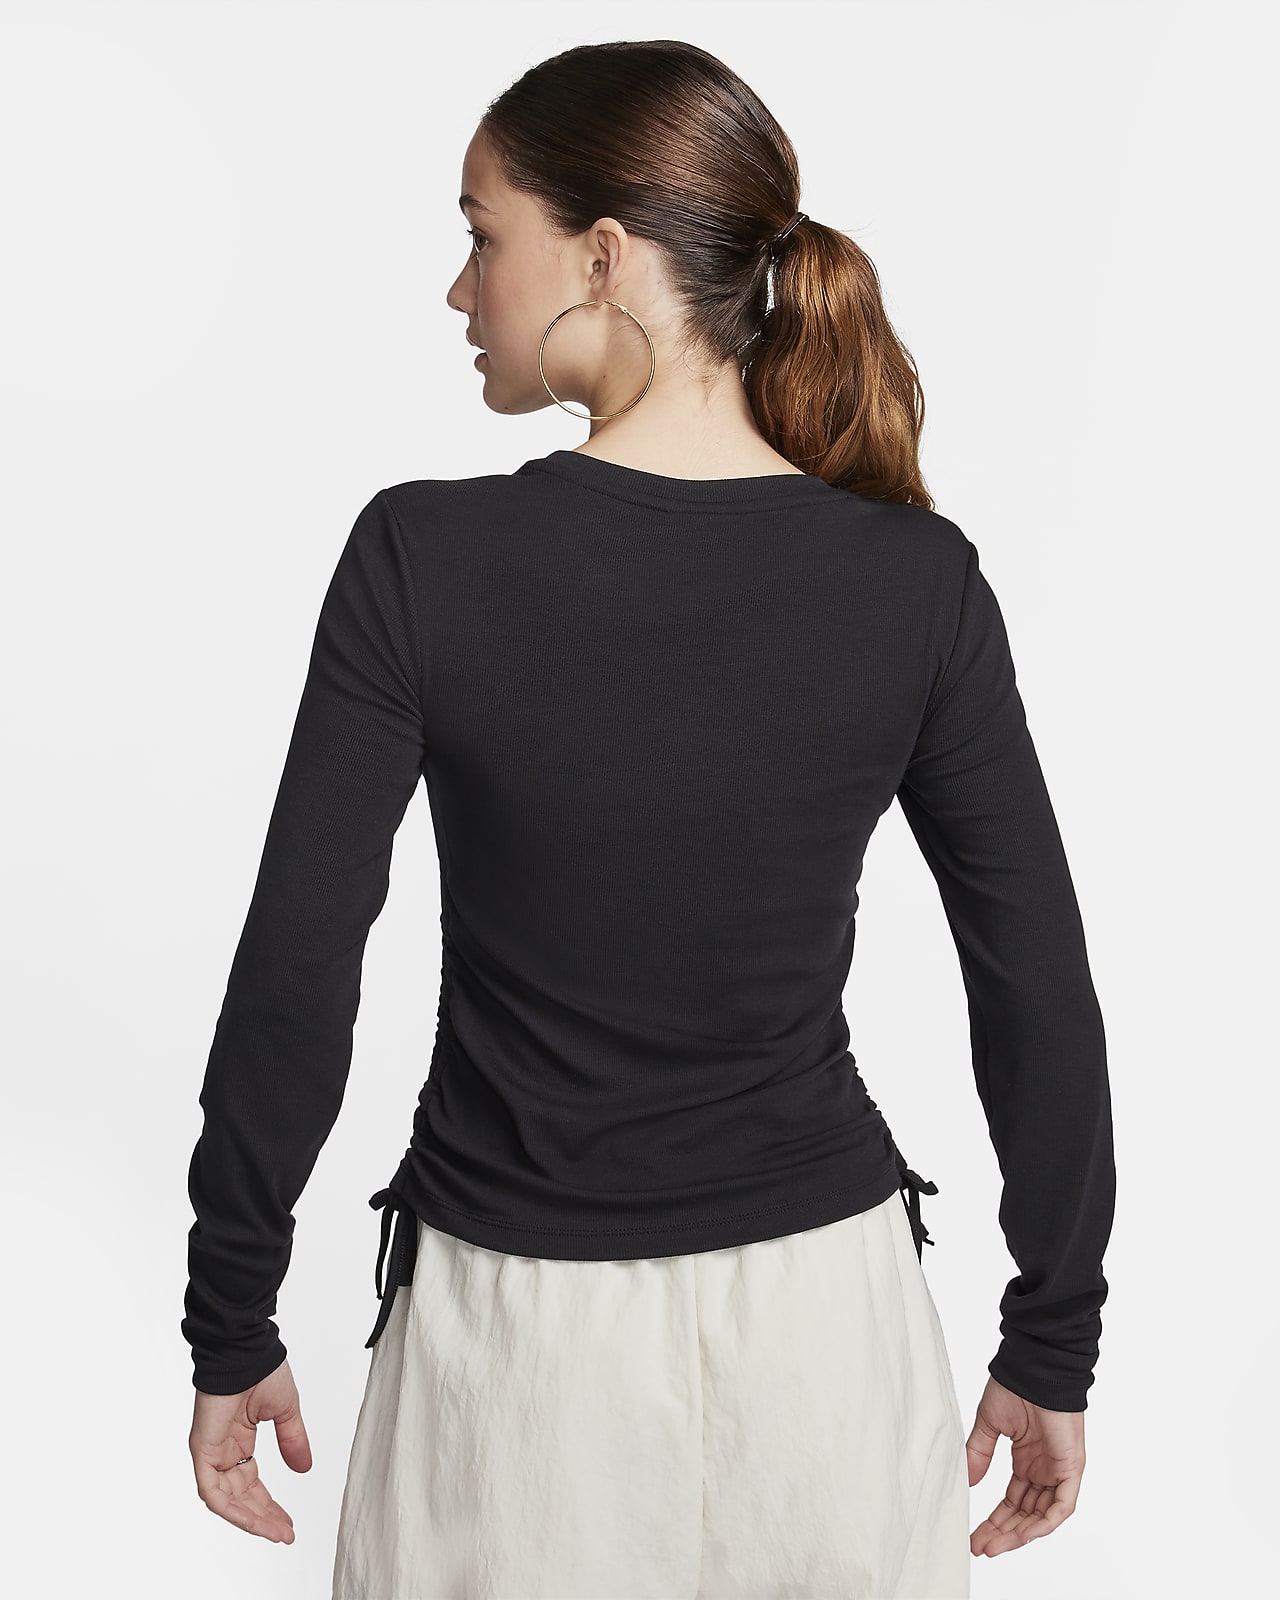 Women's Long Sleeve Essential T-shirt